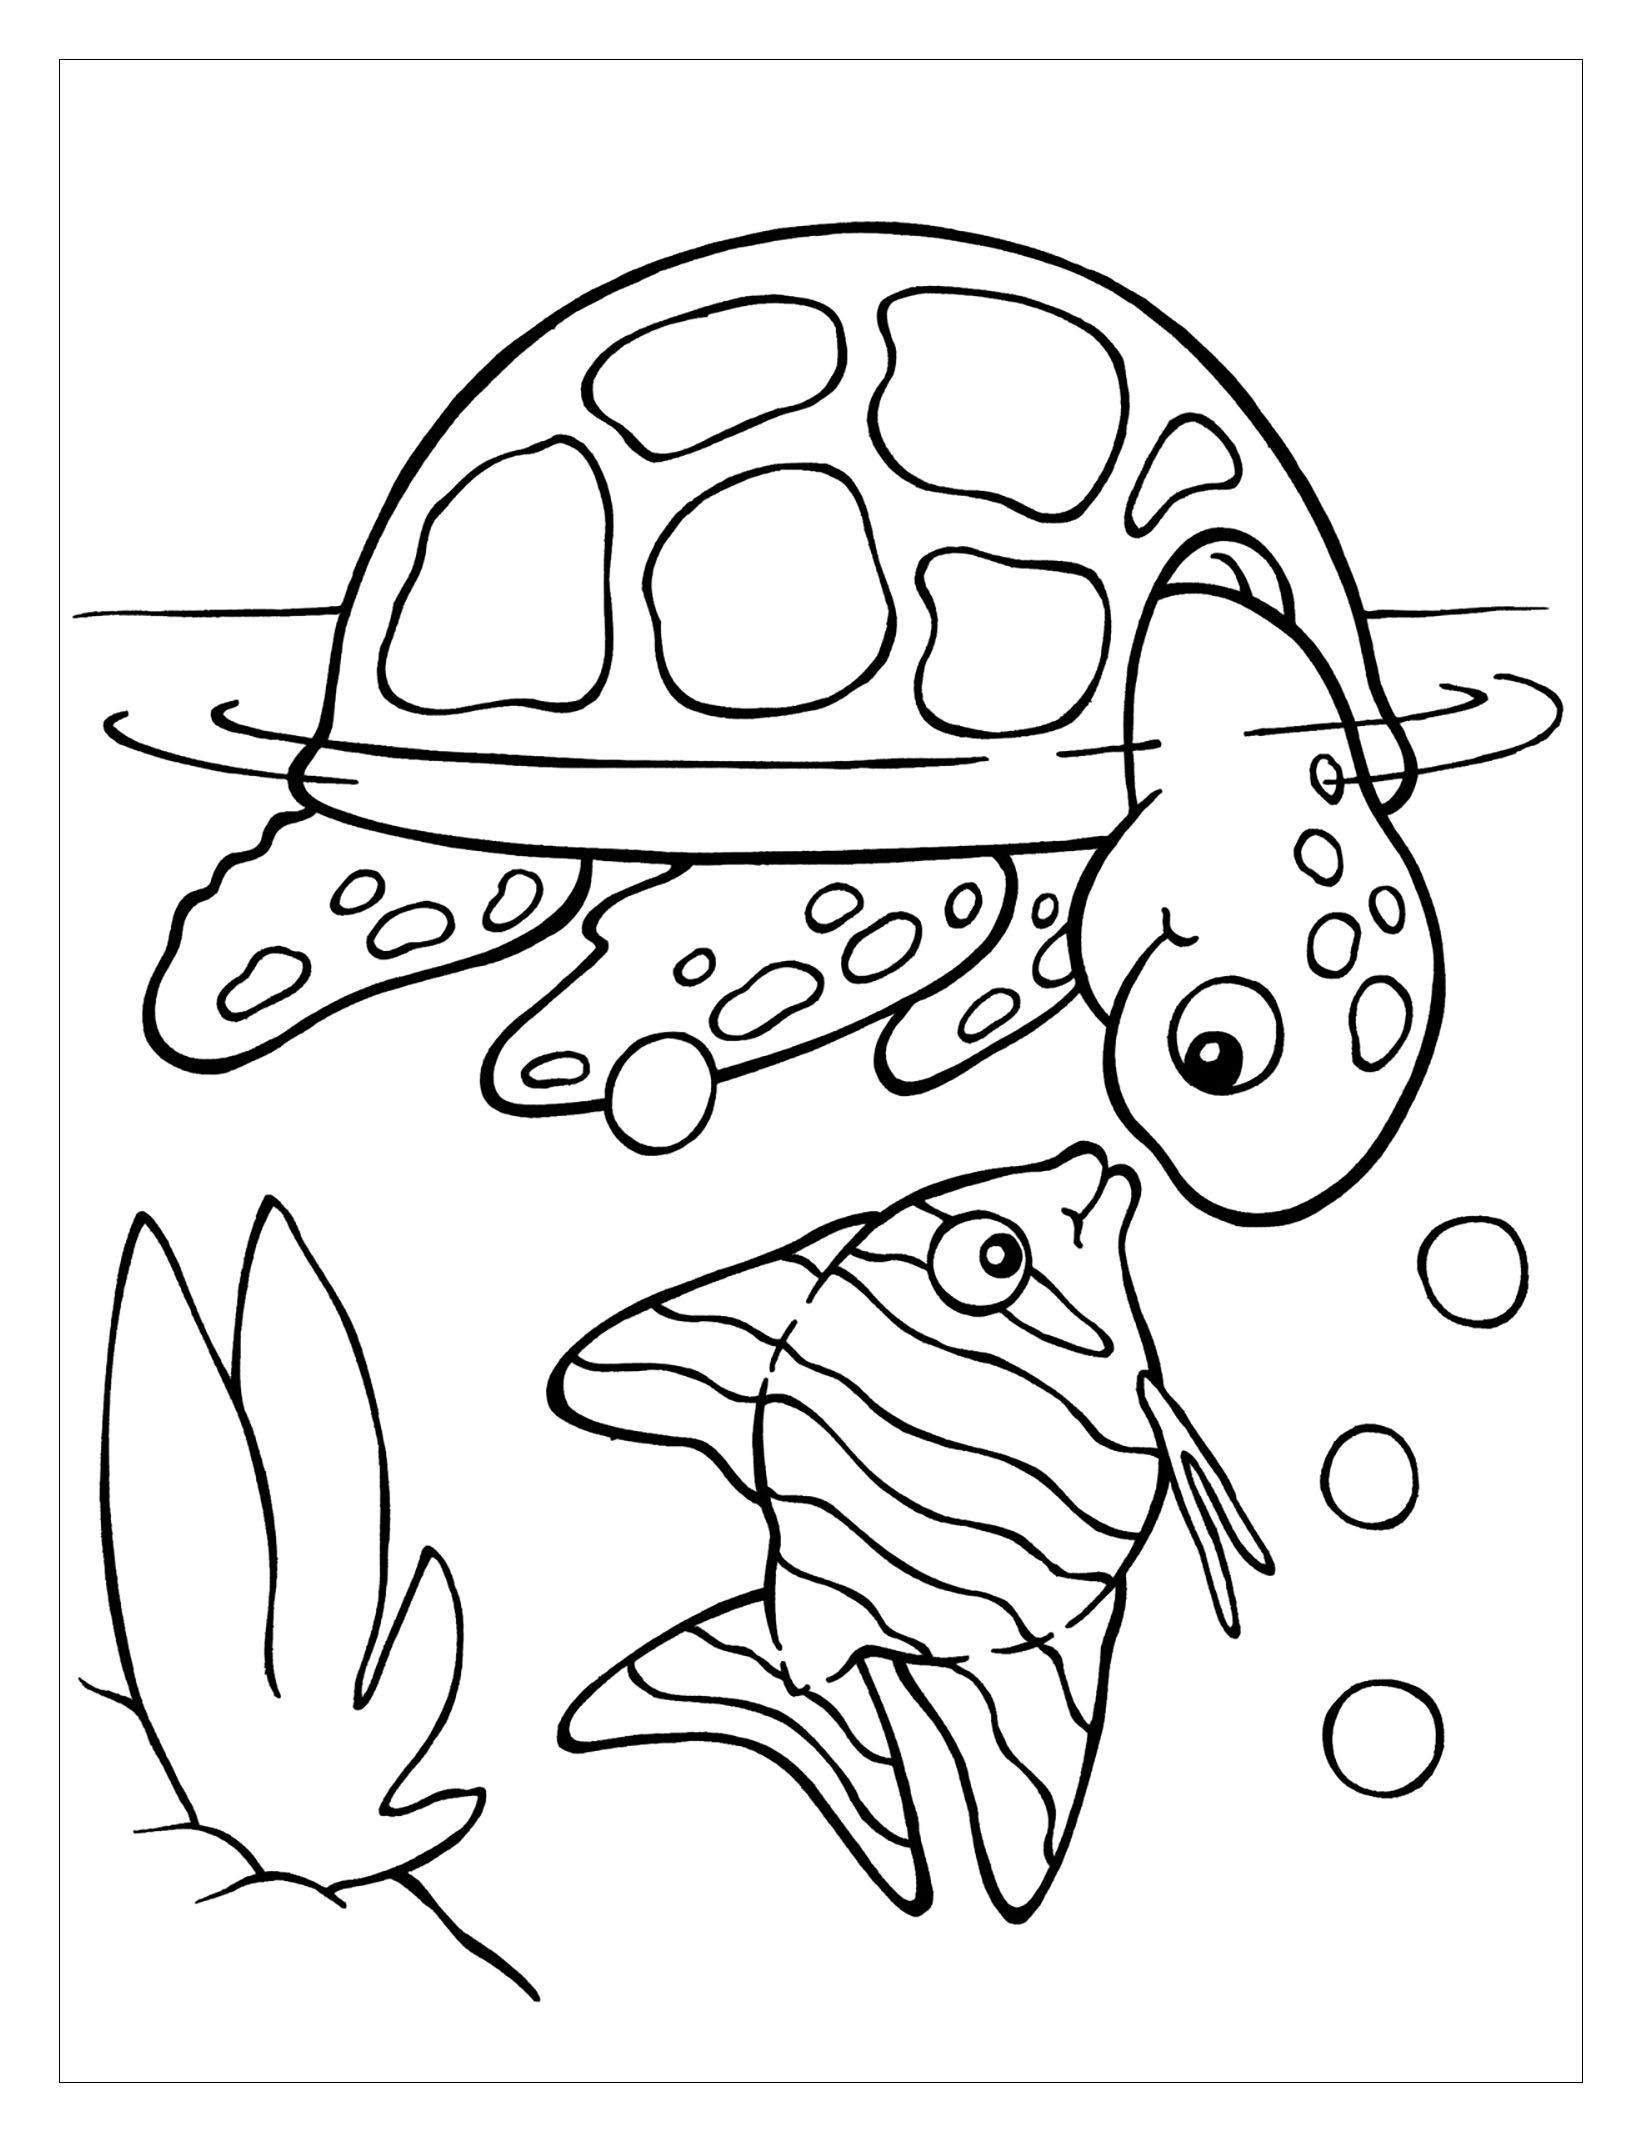 Image de tortue à imprimer et à colorier